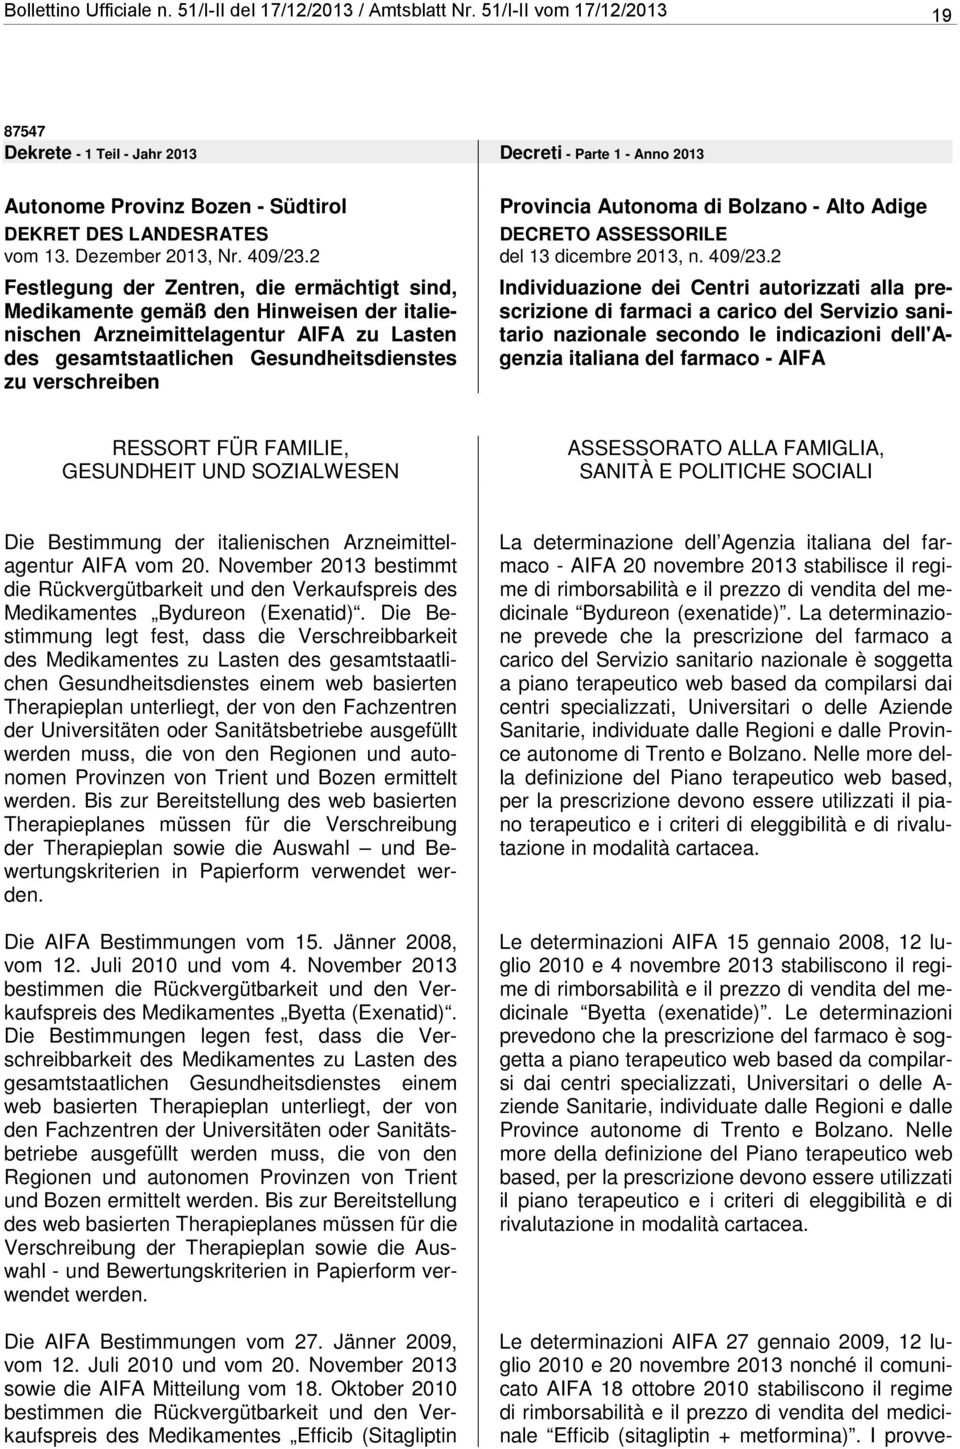 2 Festlegung der Zentren, e ermächtigt sind, Mekamente gemäß den Hinweisen der italienischen agentur AIFA zu Lasten des gesamtstaatlichen Gesundheitsenstes zu verschreiben Provincia Autonoma Bolzano